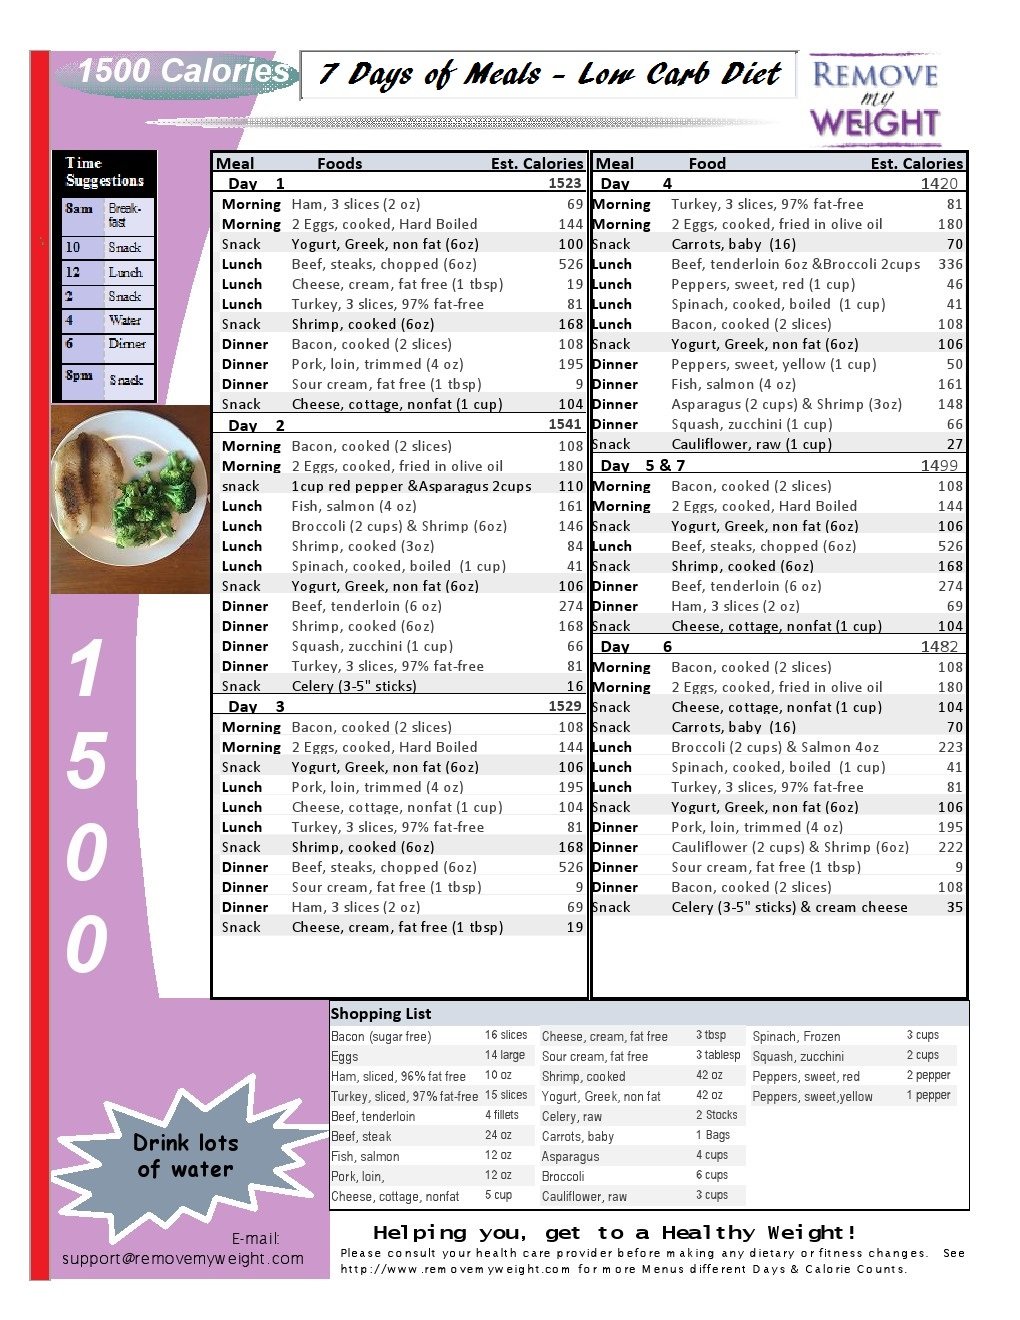 Printable Low Carb Diet: 1 Week -1500 Calorie Menu Plan 